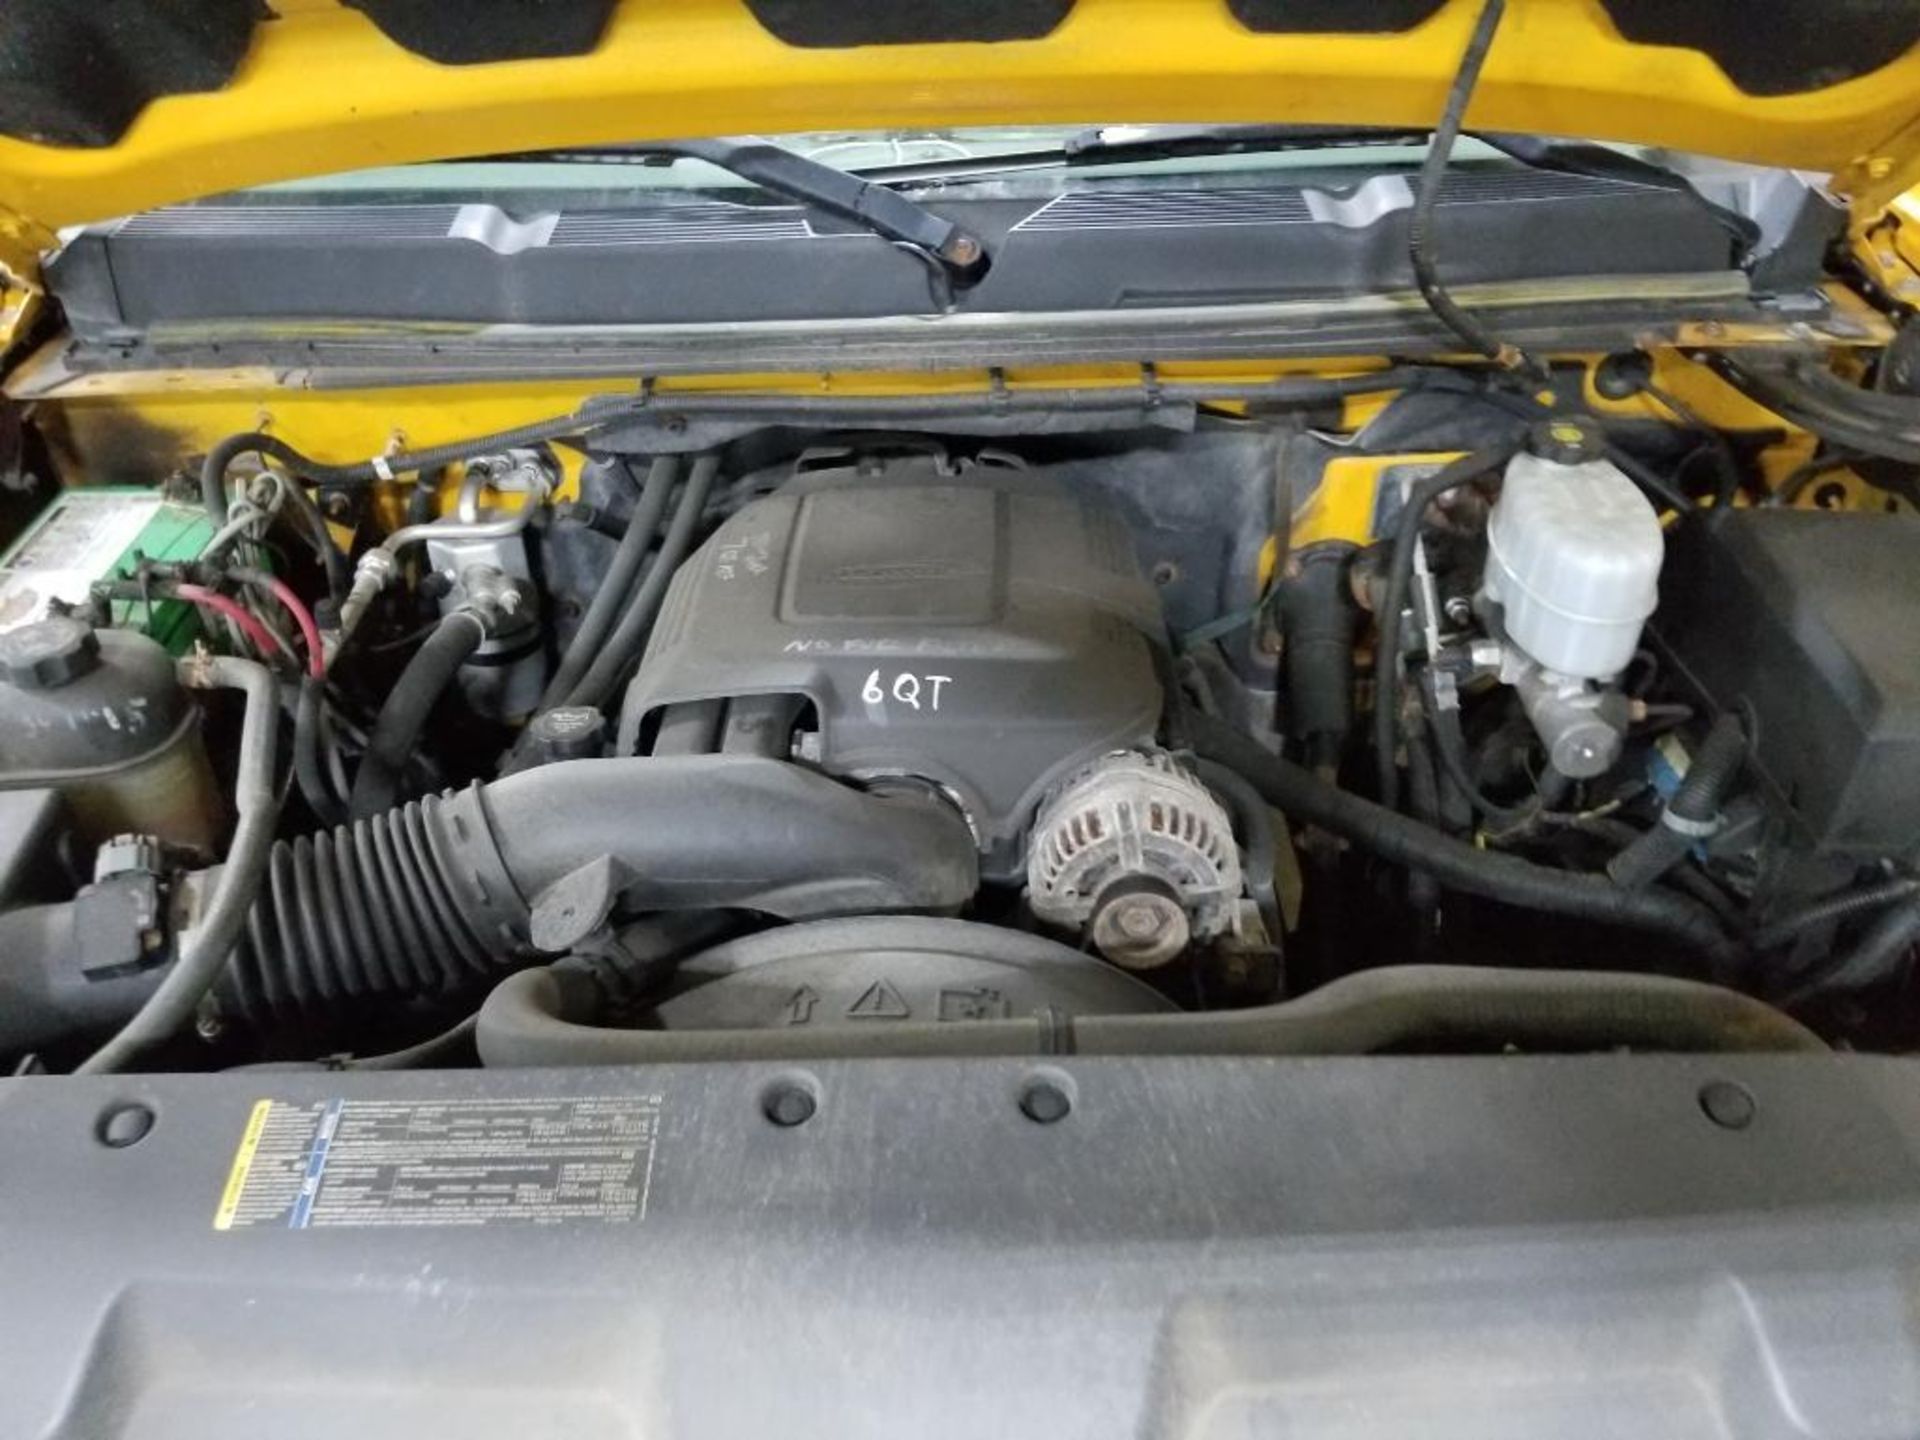 2010 Chevy Silverado 4 door, 3500 HD. Vortec gas engine. VIN 1GC4CZBG9AF144622. - Image 47 of 52